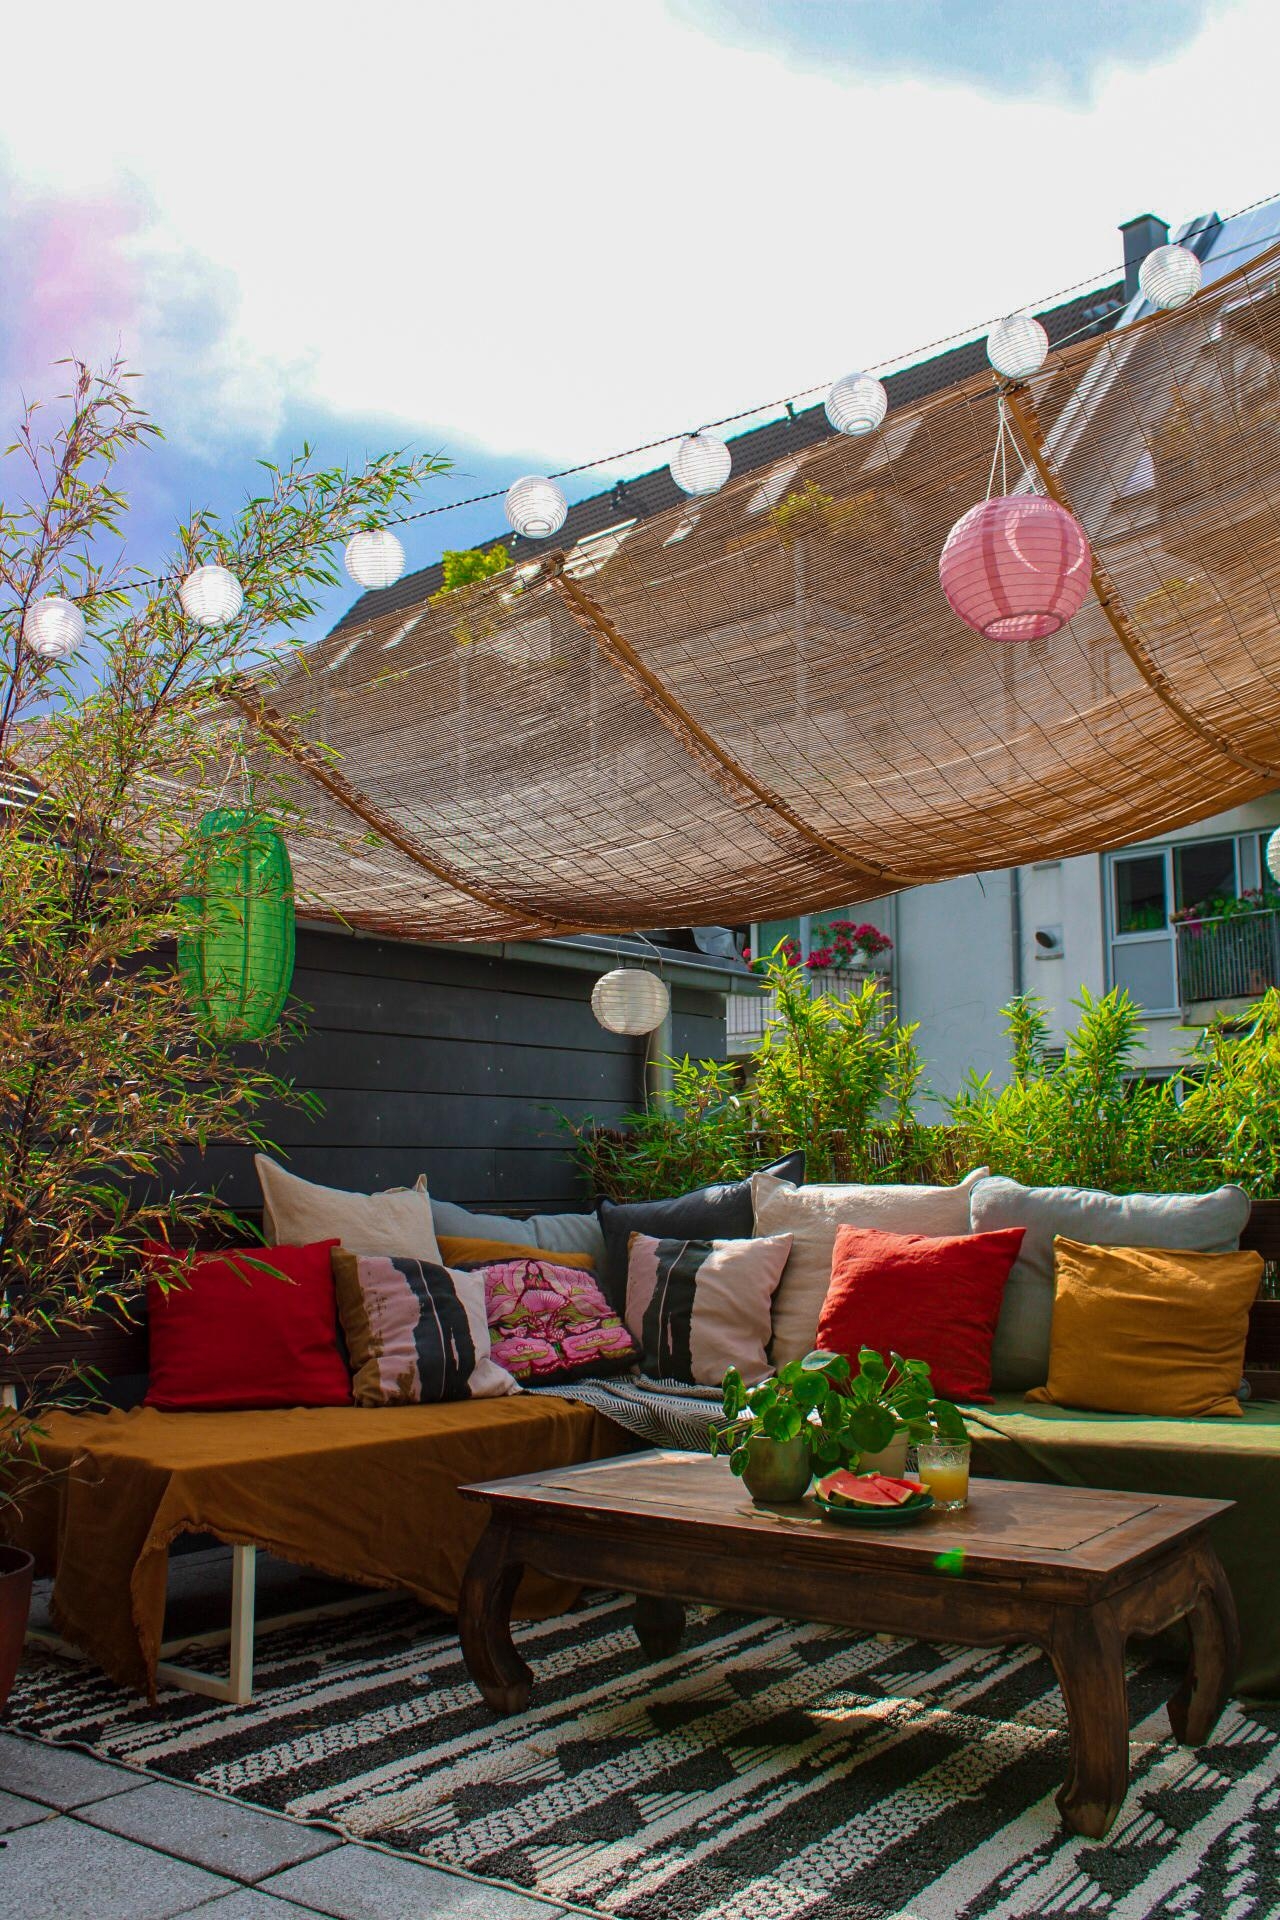 #terrassengestaltung
#outdoorlivingroom
#draussenzimmer 
#balkonideen
#outdoorteppich
#urlaubzuhause
#dachterrasse